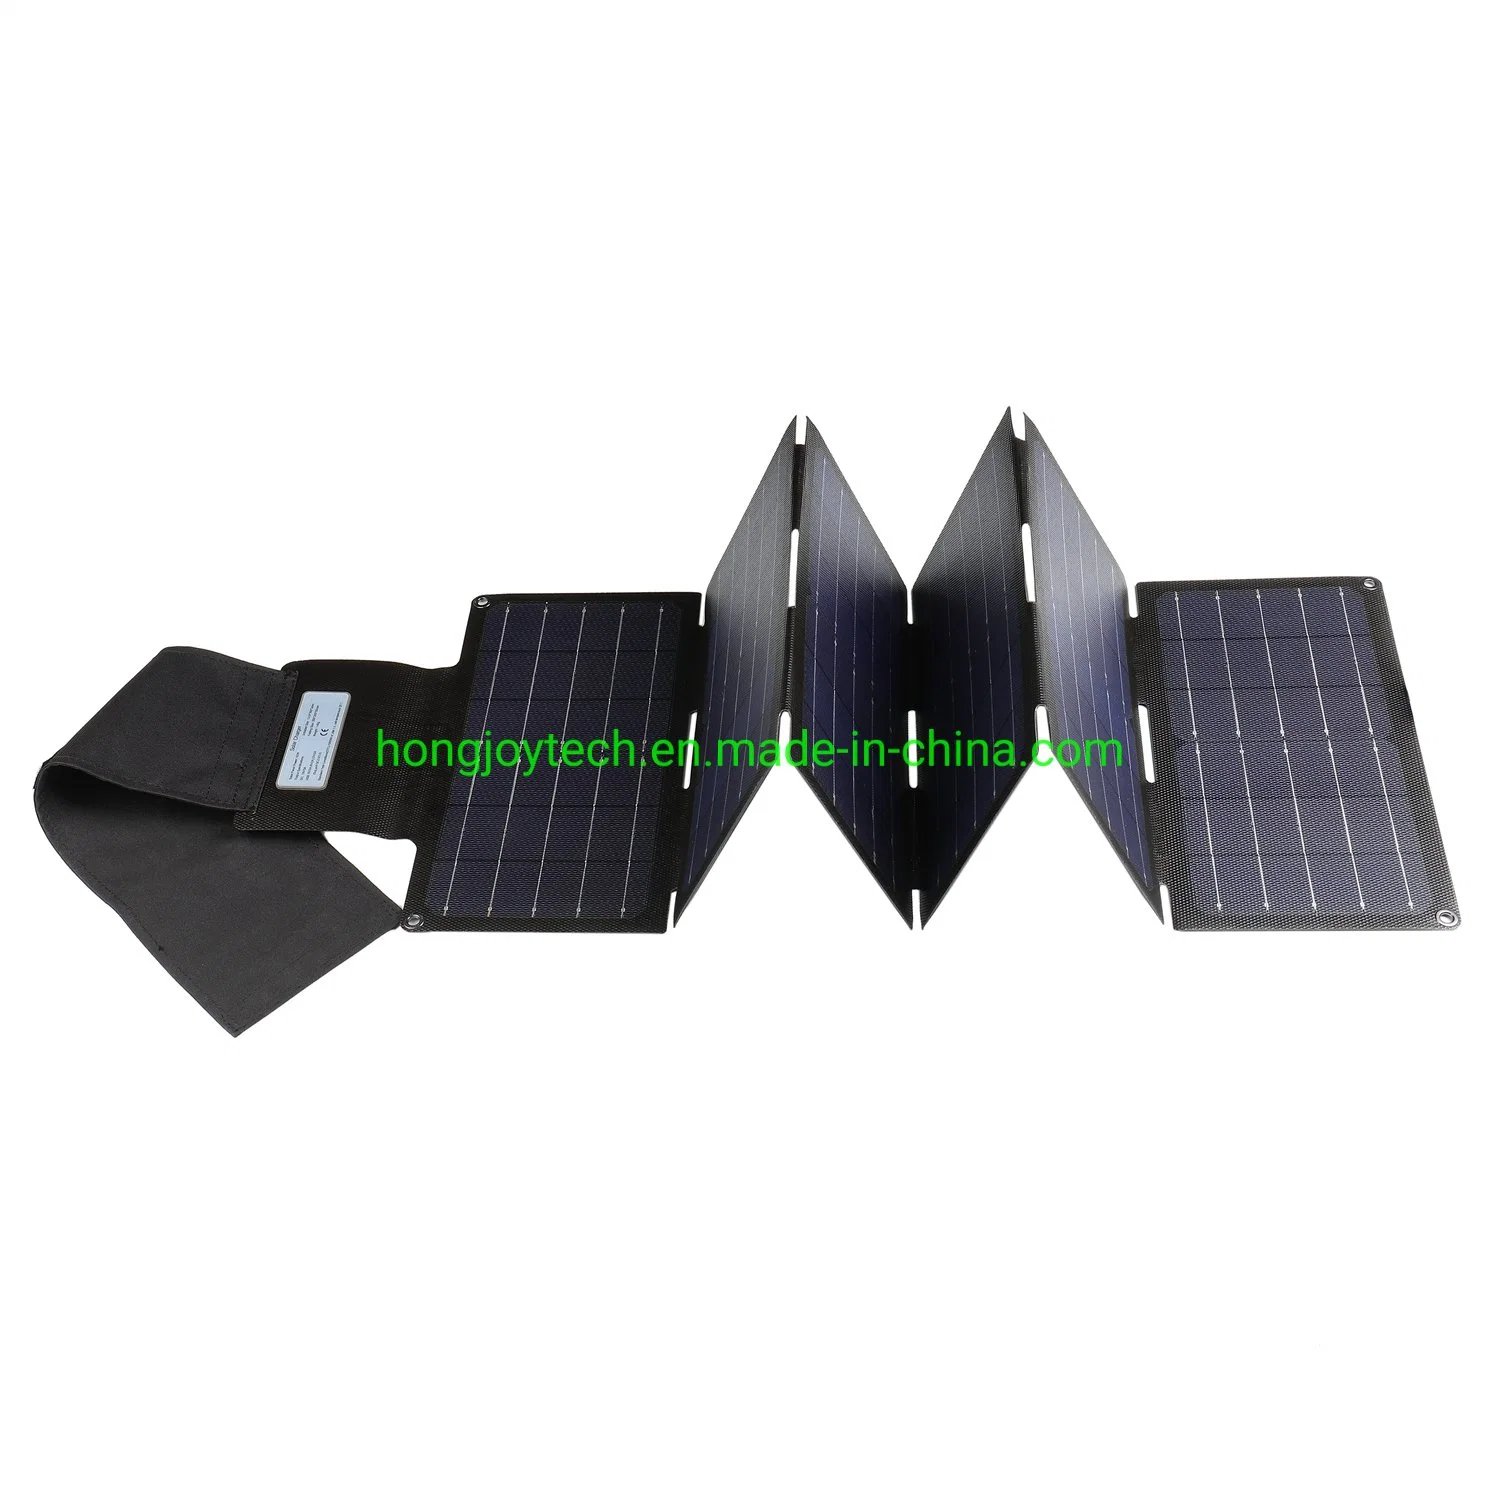 الطاقة الخضراء الخارجية ETFE خلايا السليكون أحادية البلورات القابلة للطي القابلة للطي شاحن طاقة الوحدة الاحتياطي بعيدًا عن الشبكة بقدرة 90 واط 80 واط، طيّ 100 واط اللوحة الكهروضوئية الشمسية